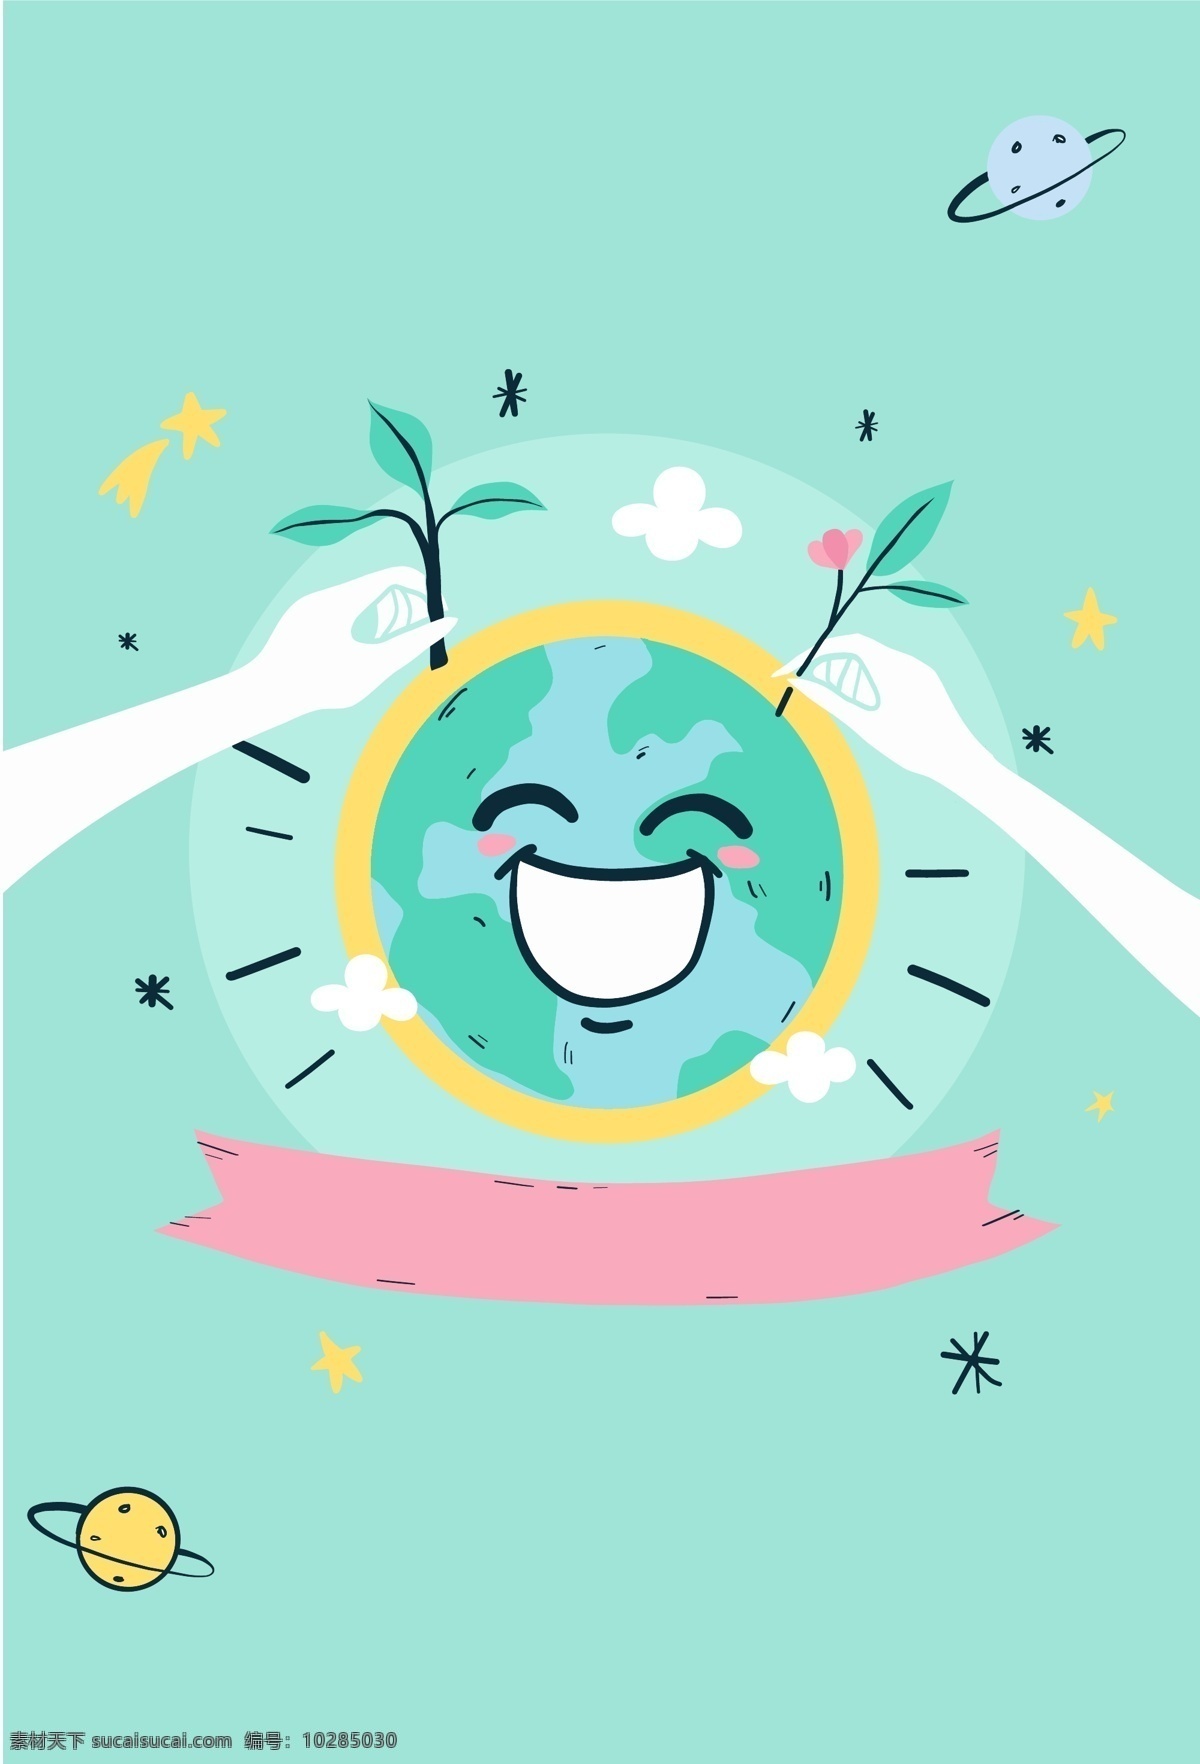 世界 微笑 日 地球 海报 背景 世界微笑日 笑 卡通 矢量 海报背景 阳光灿烂 积极 公益 绿植 对话框